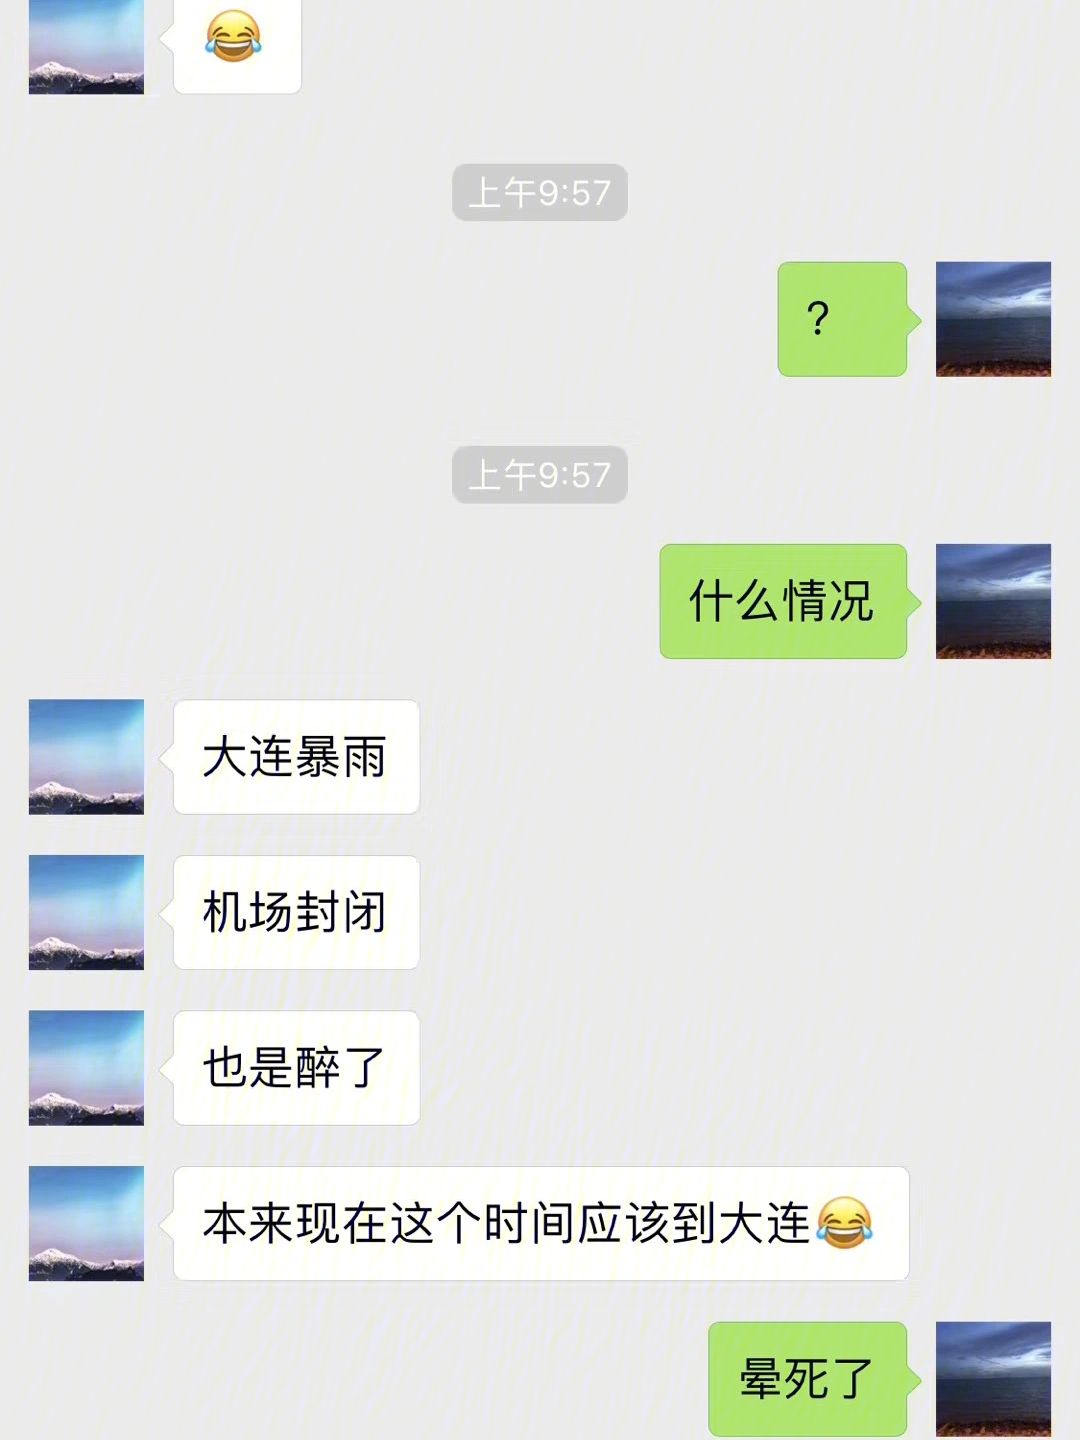 聊天软件飞机中文切换不了-聊天软件飞机中文切换不了吗